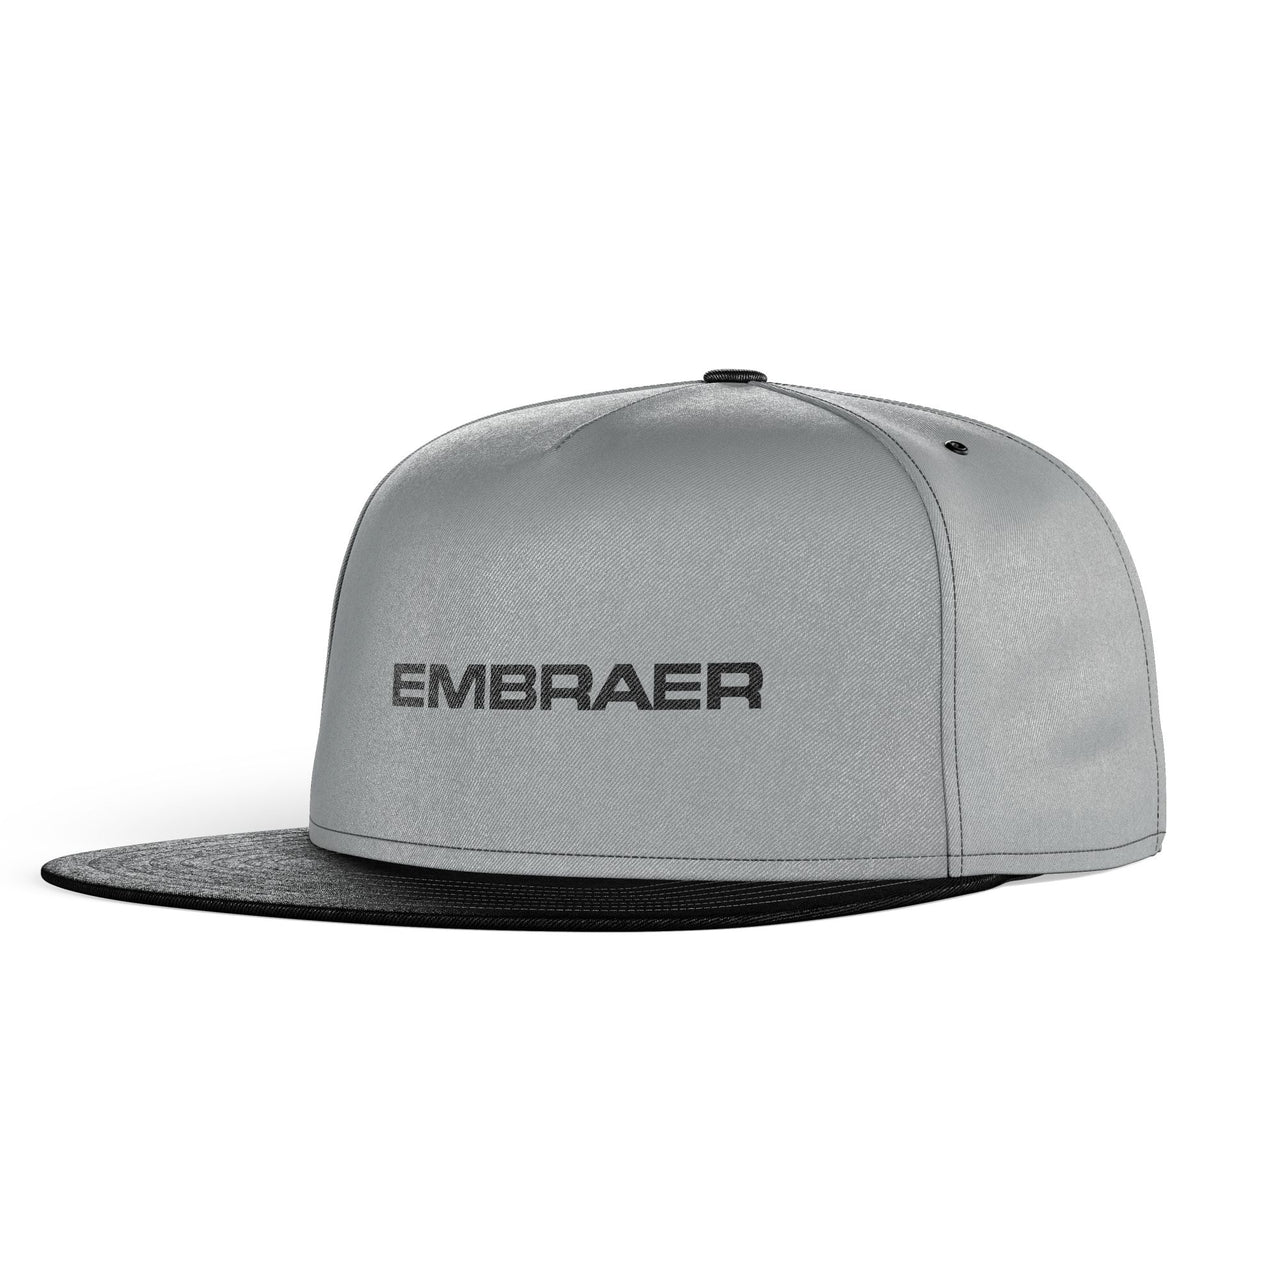 Embraer & Text Designed Snapback Caps & Hats